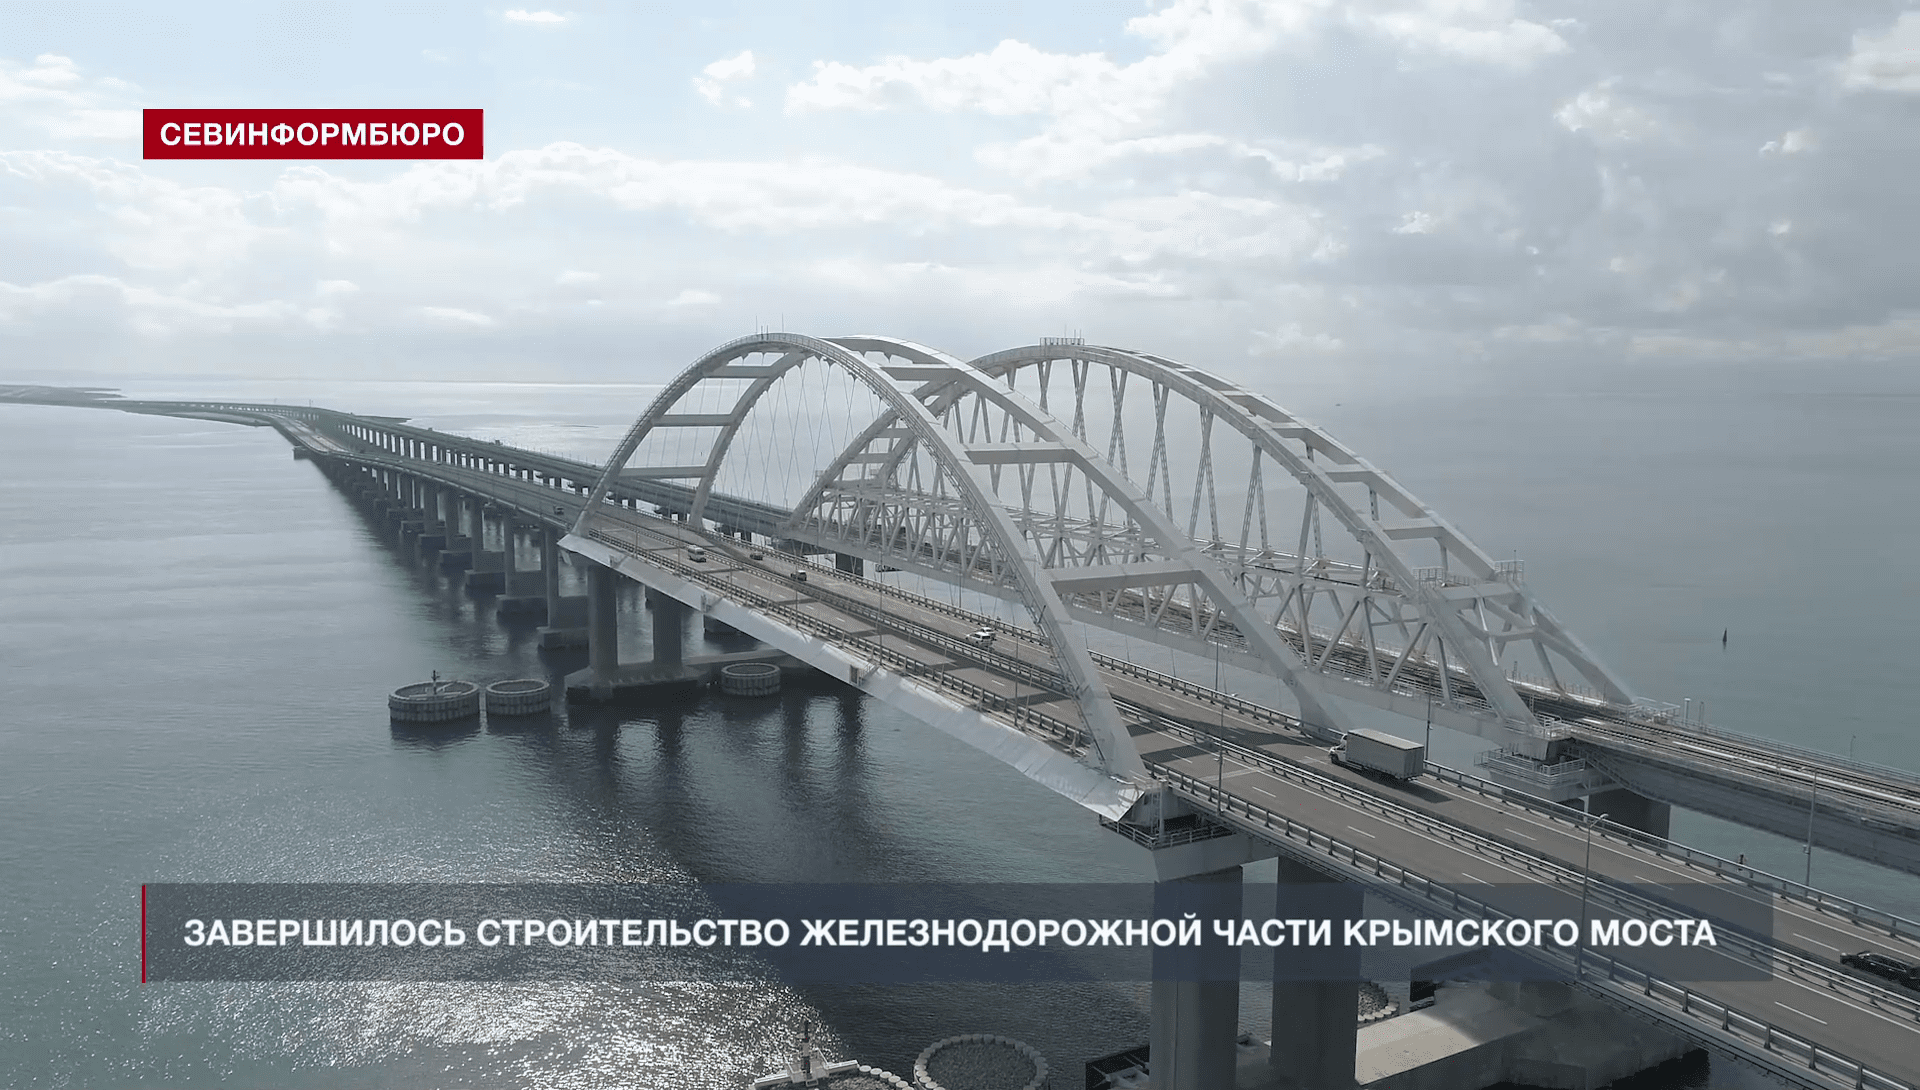 Железнодорожный крымский мост. Мост через Керченский пролив 2021. Крымский мост 2021. Крымский Железнодорожный мост. Керченский Железнодорожный мост.